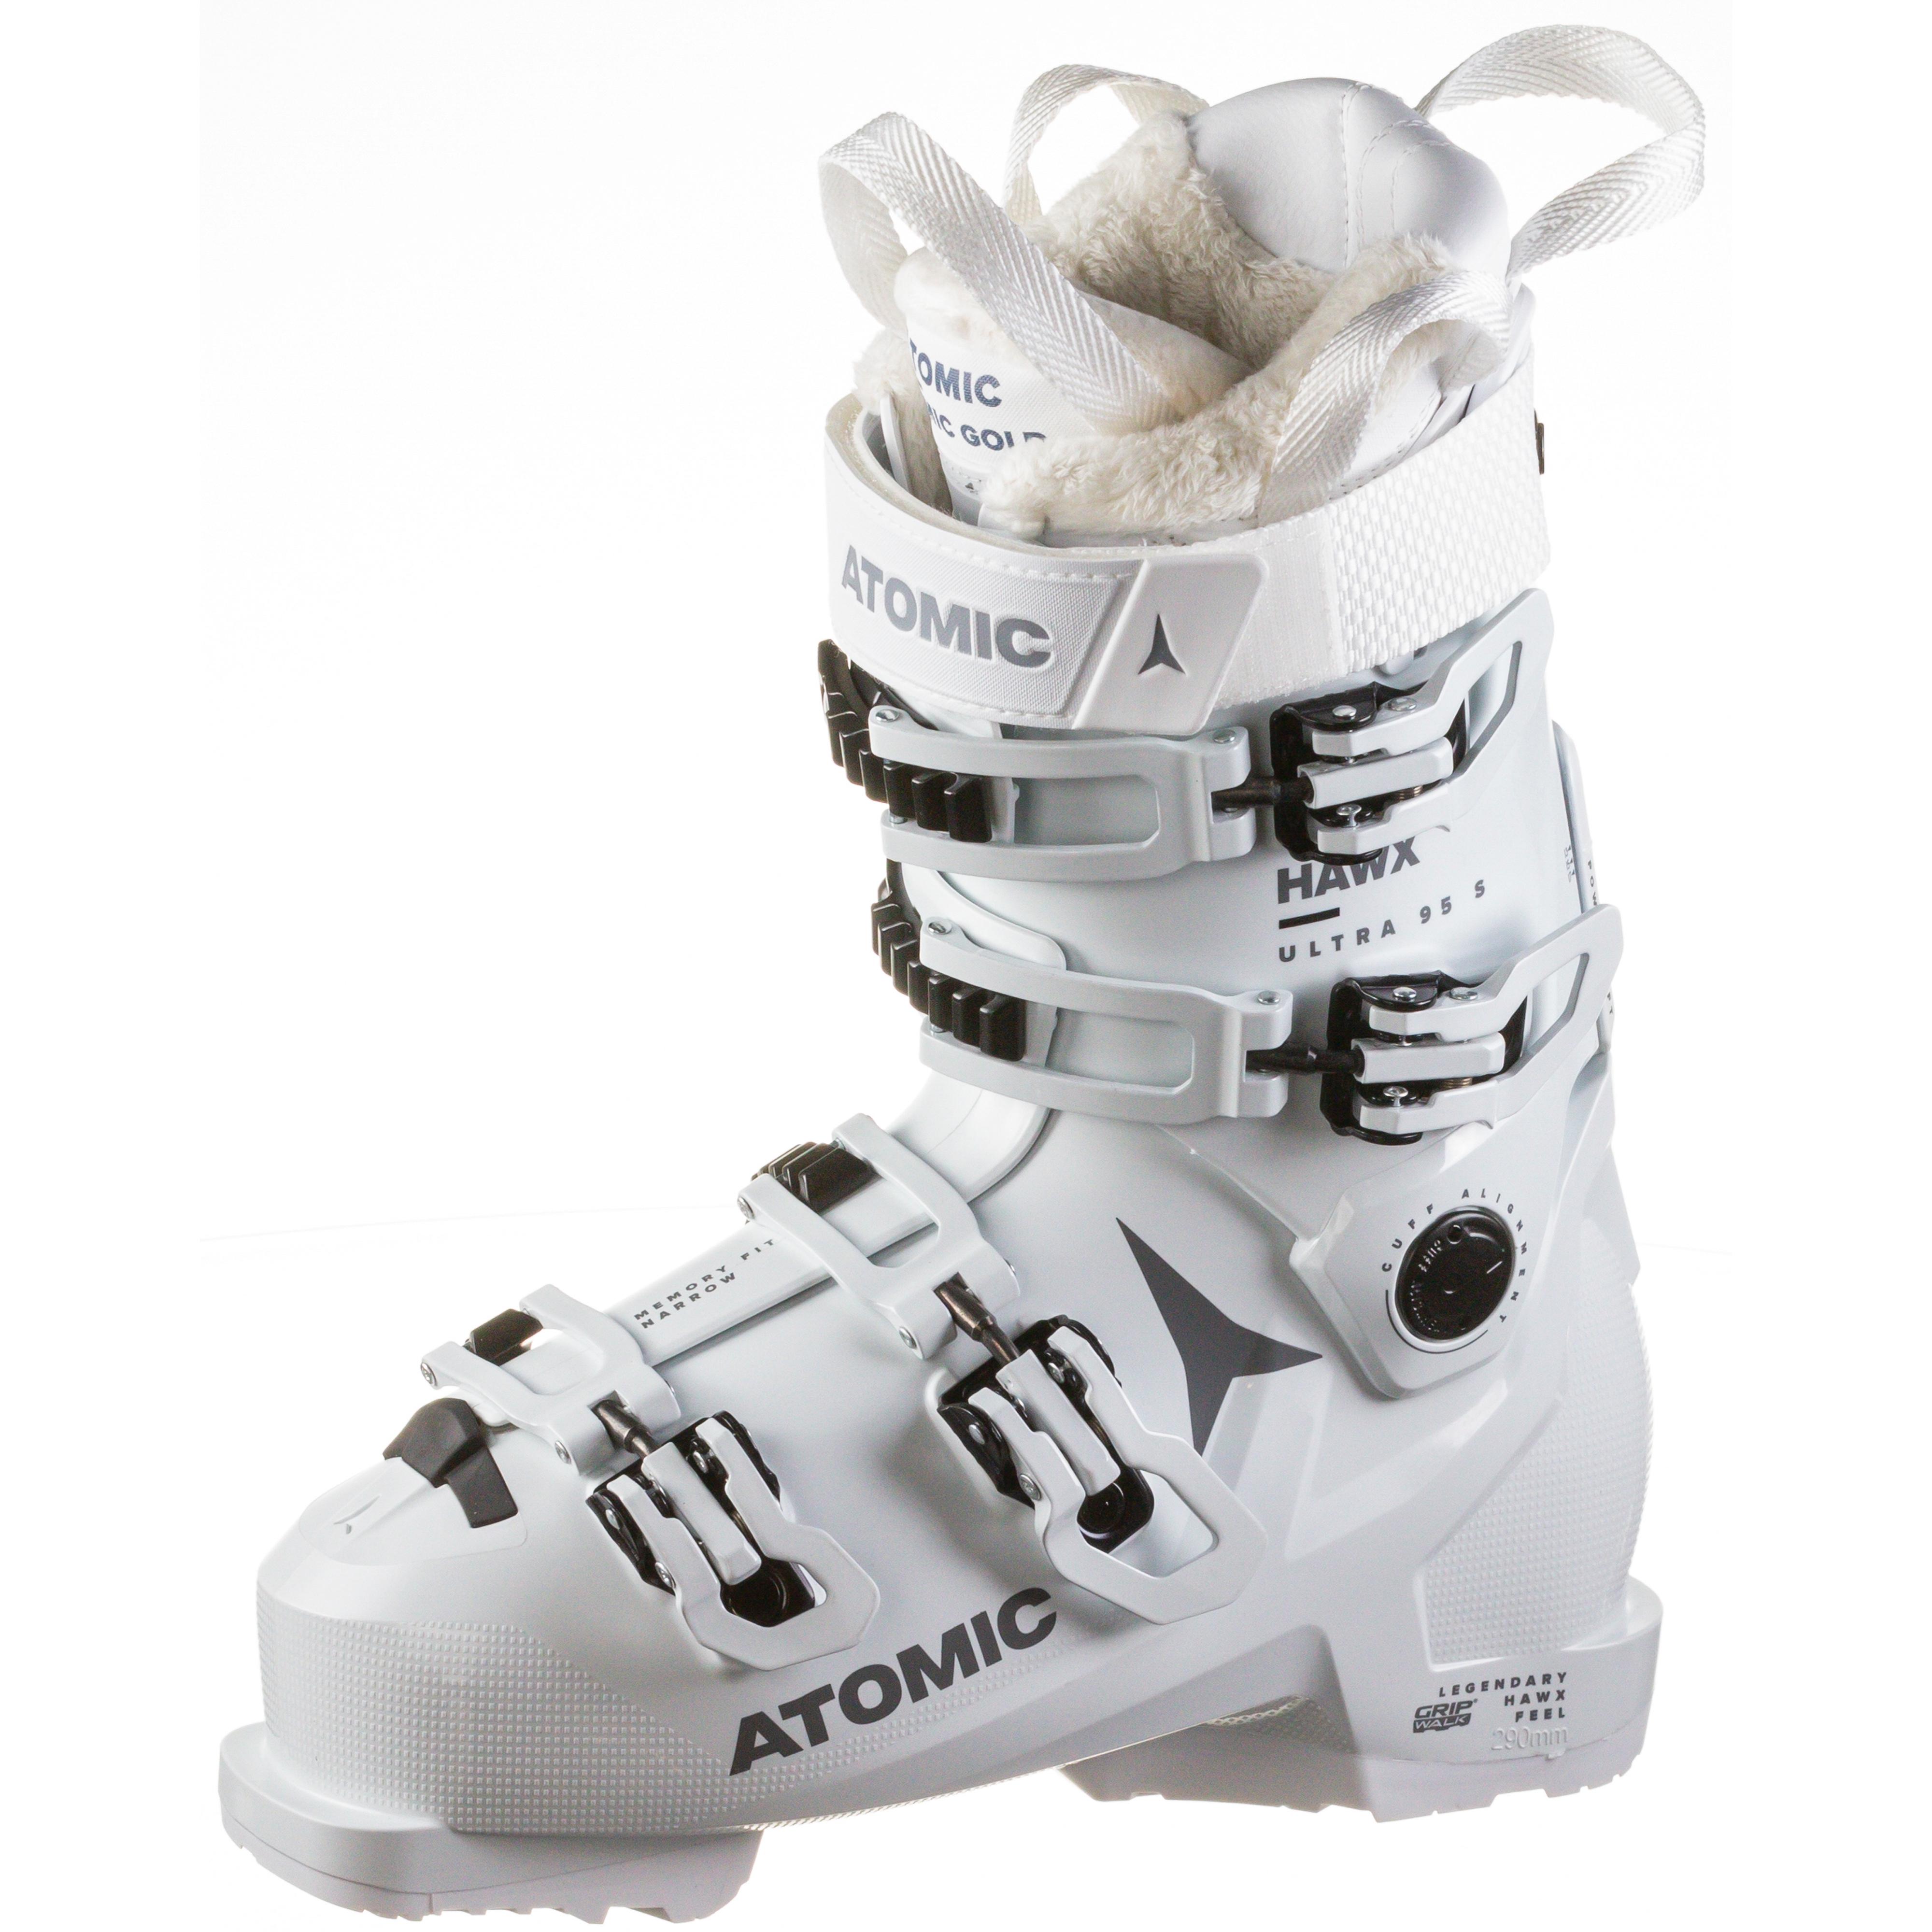 Atomic Skischuhe & sicher SportScheck kaufen